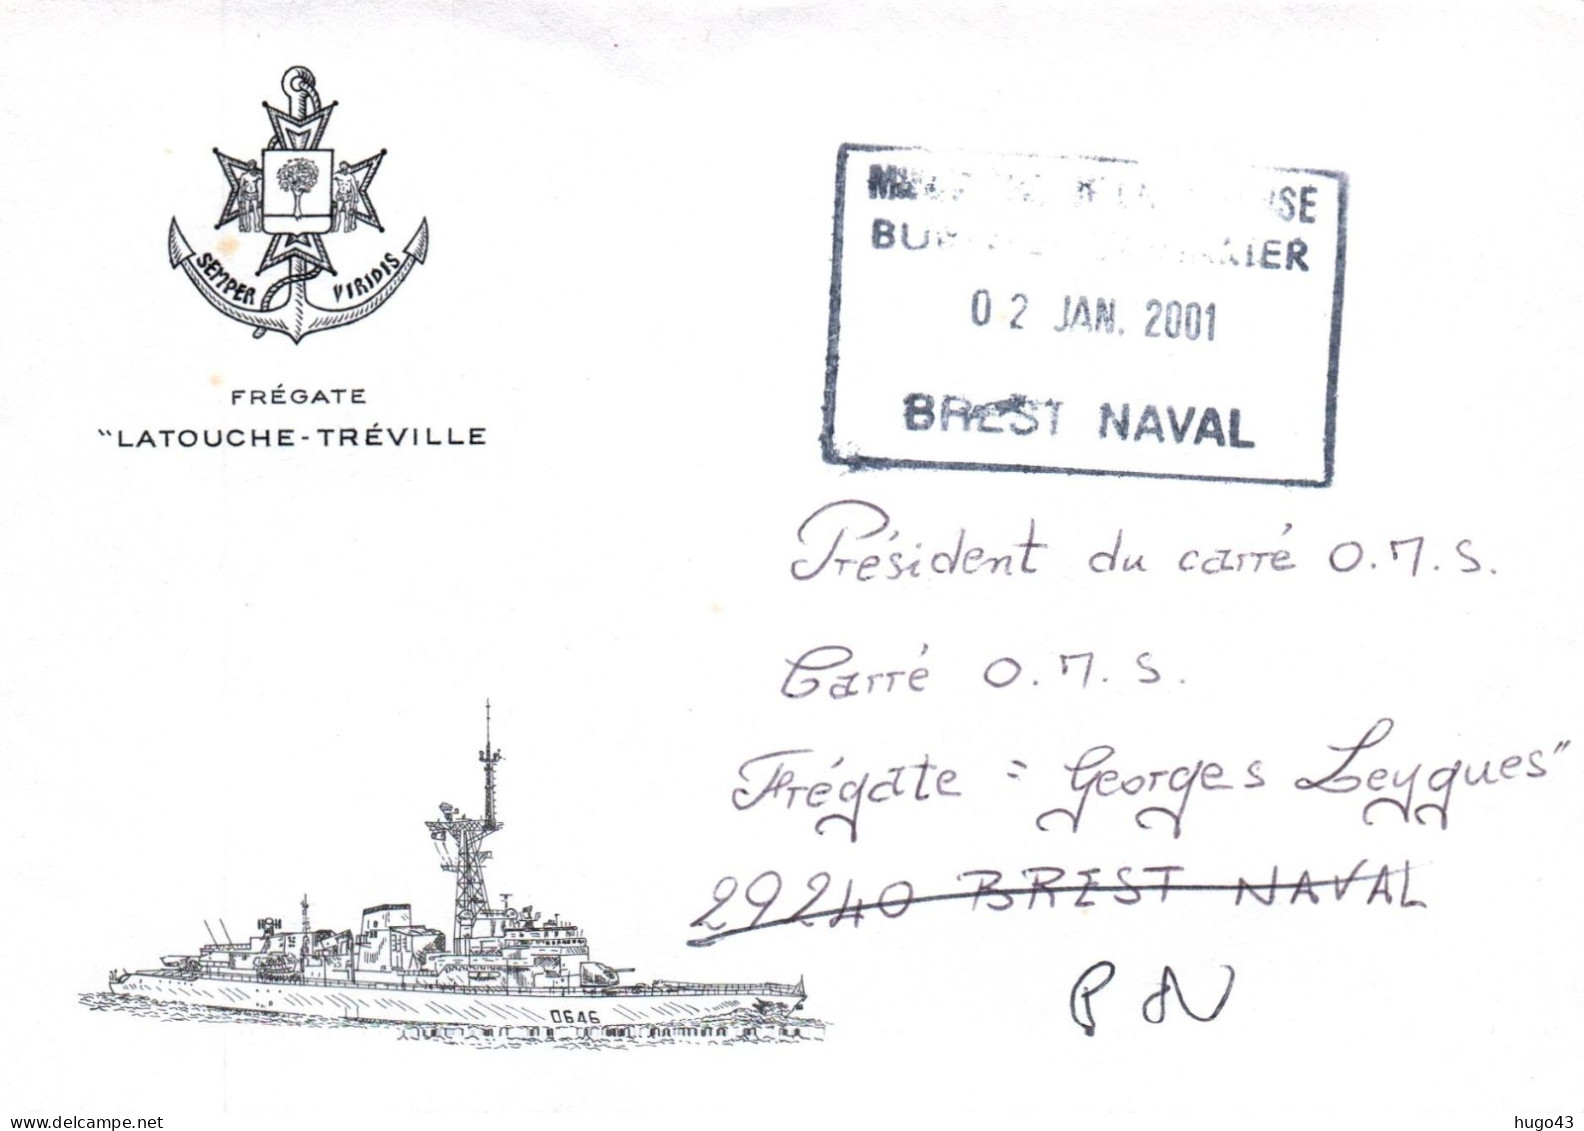 ENVELOPPE AVEC CACHET OFFICIEL FREGATE LATOUCHE TREVILLE - BREST NAVAL LE 02/01/2001 - Correo Naval